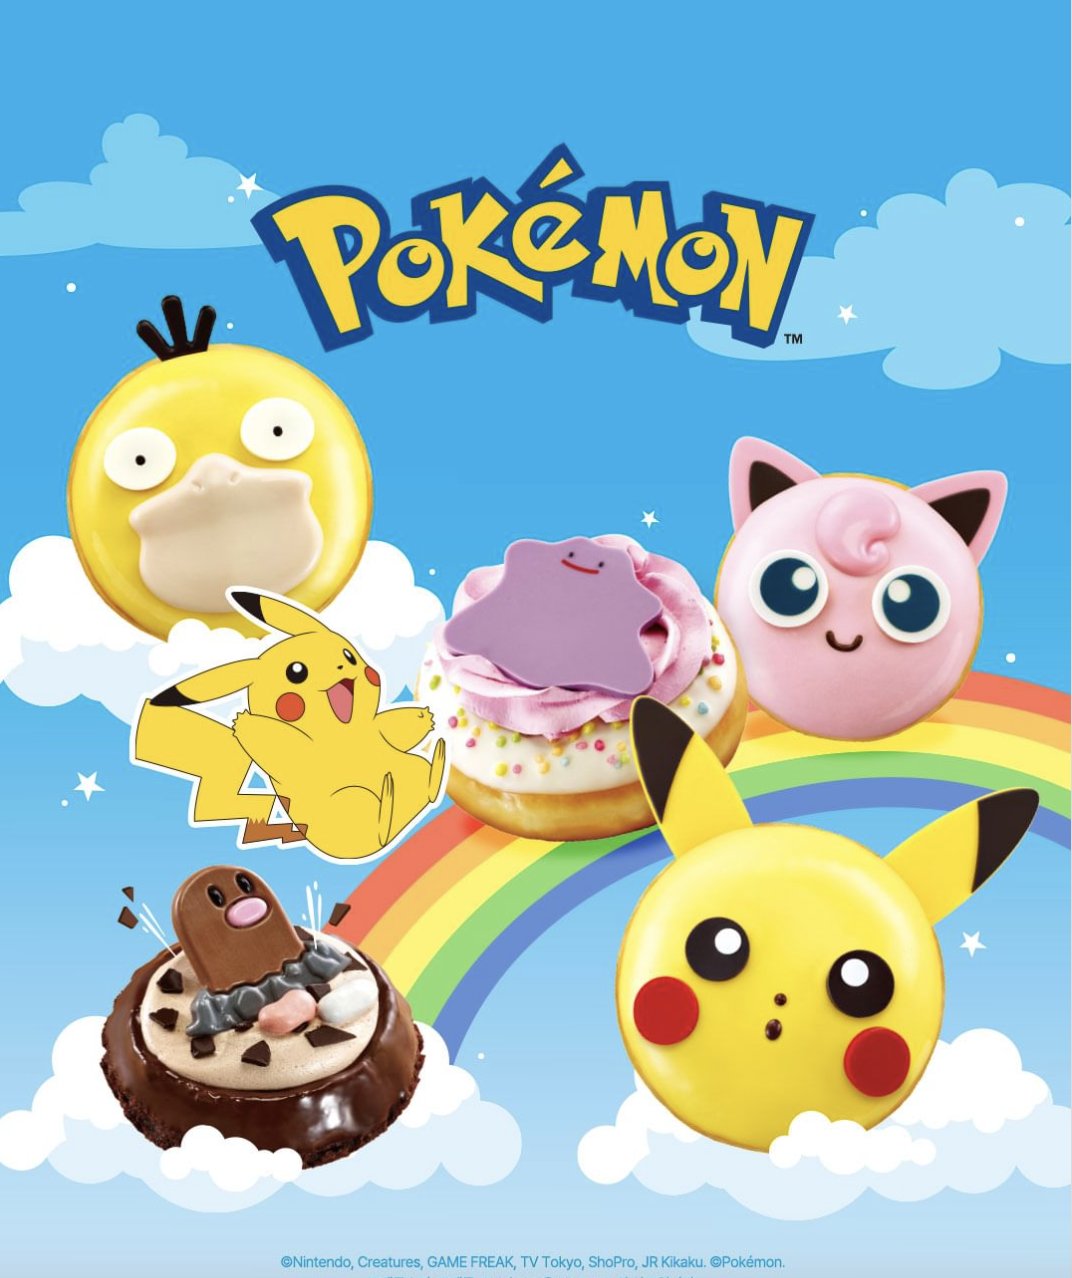 Pokémon x Krispy Kreme: Conoce los detalles de esta adorable y deliciosa colaboración 2